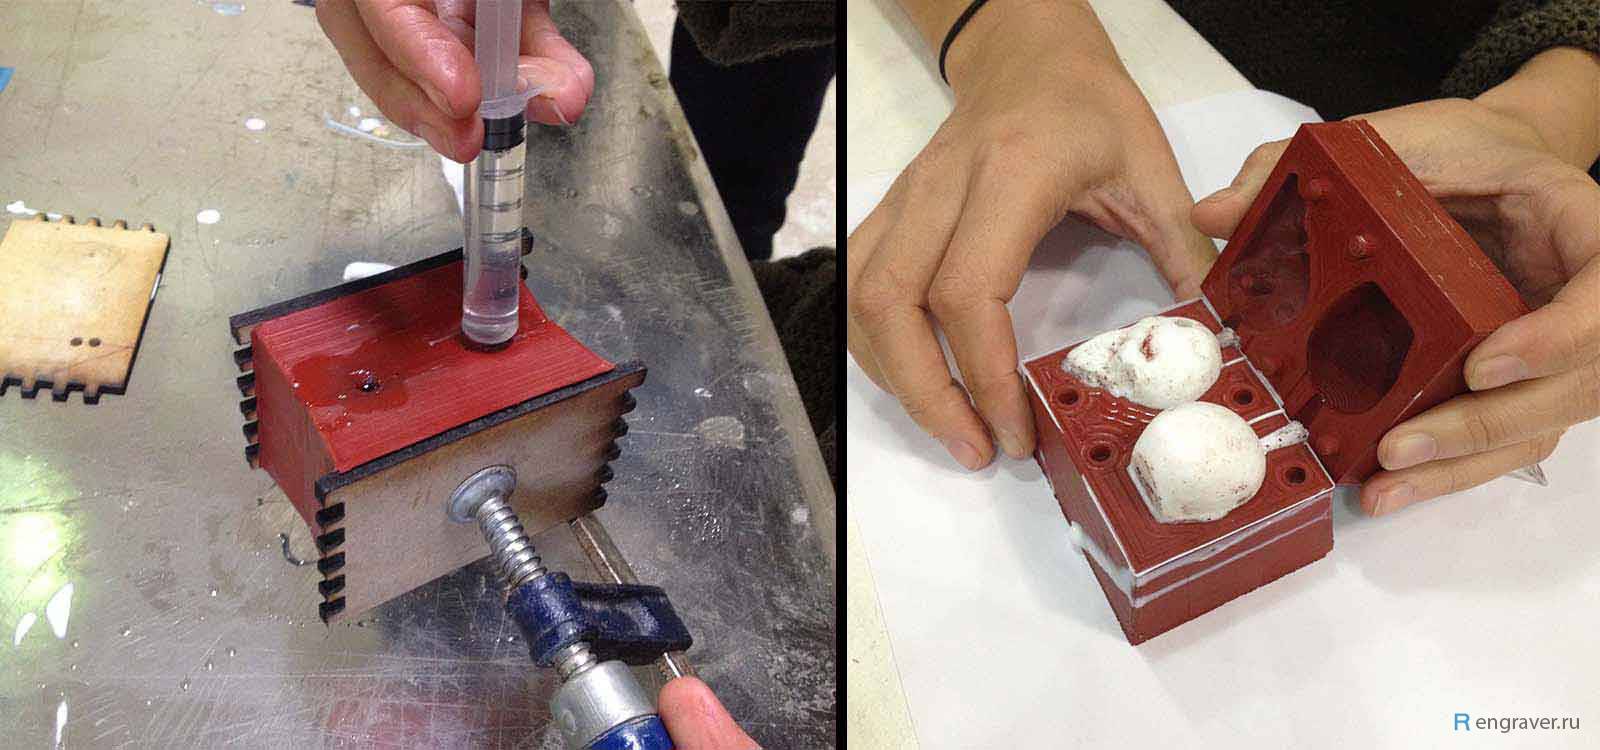 Изготовление формы для отливки алюминиевых деталей: материалы, пошаговая инструкция, нюансы отливки